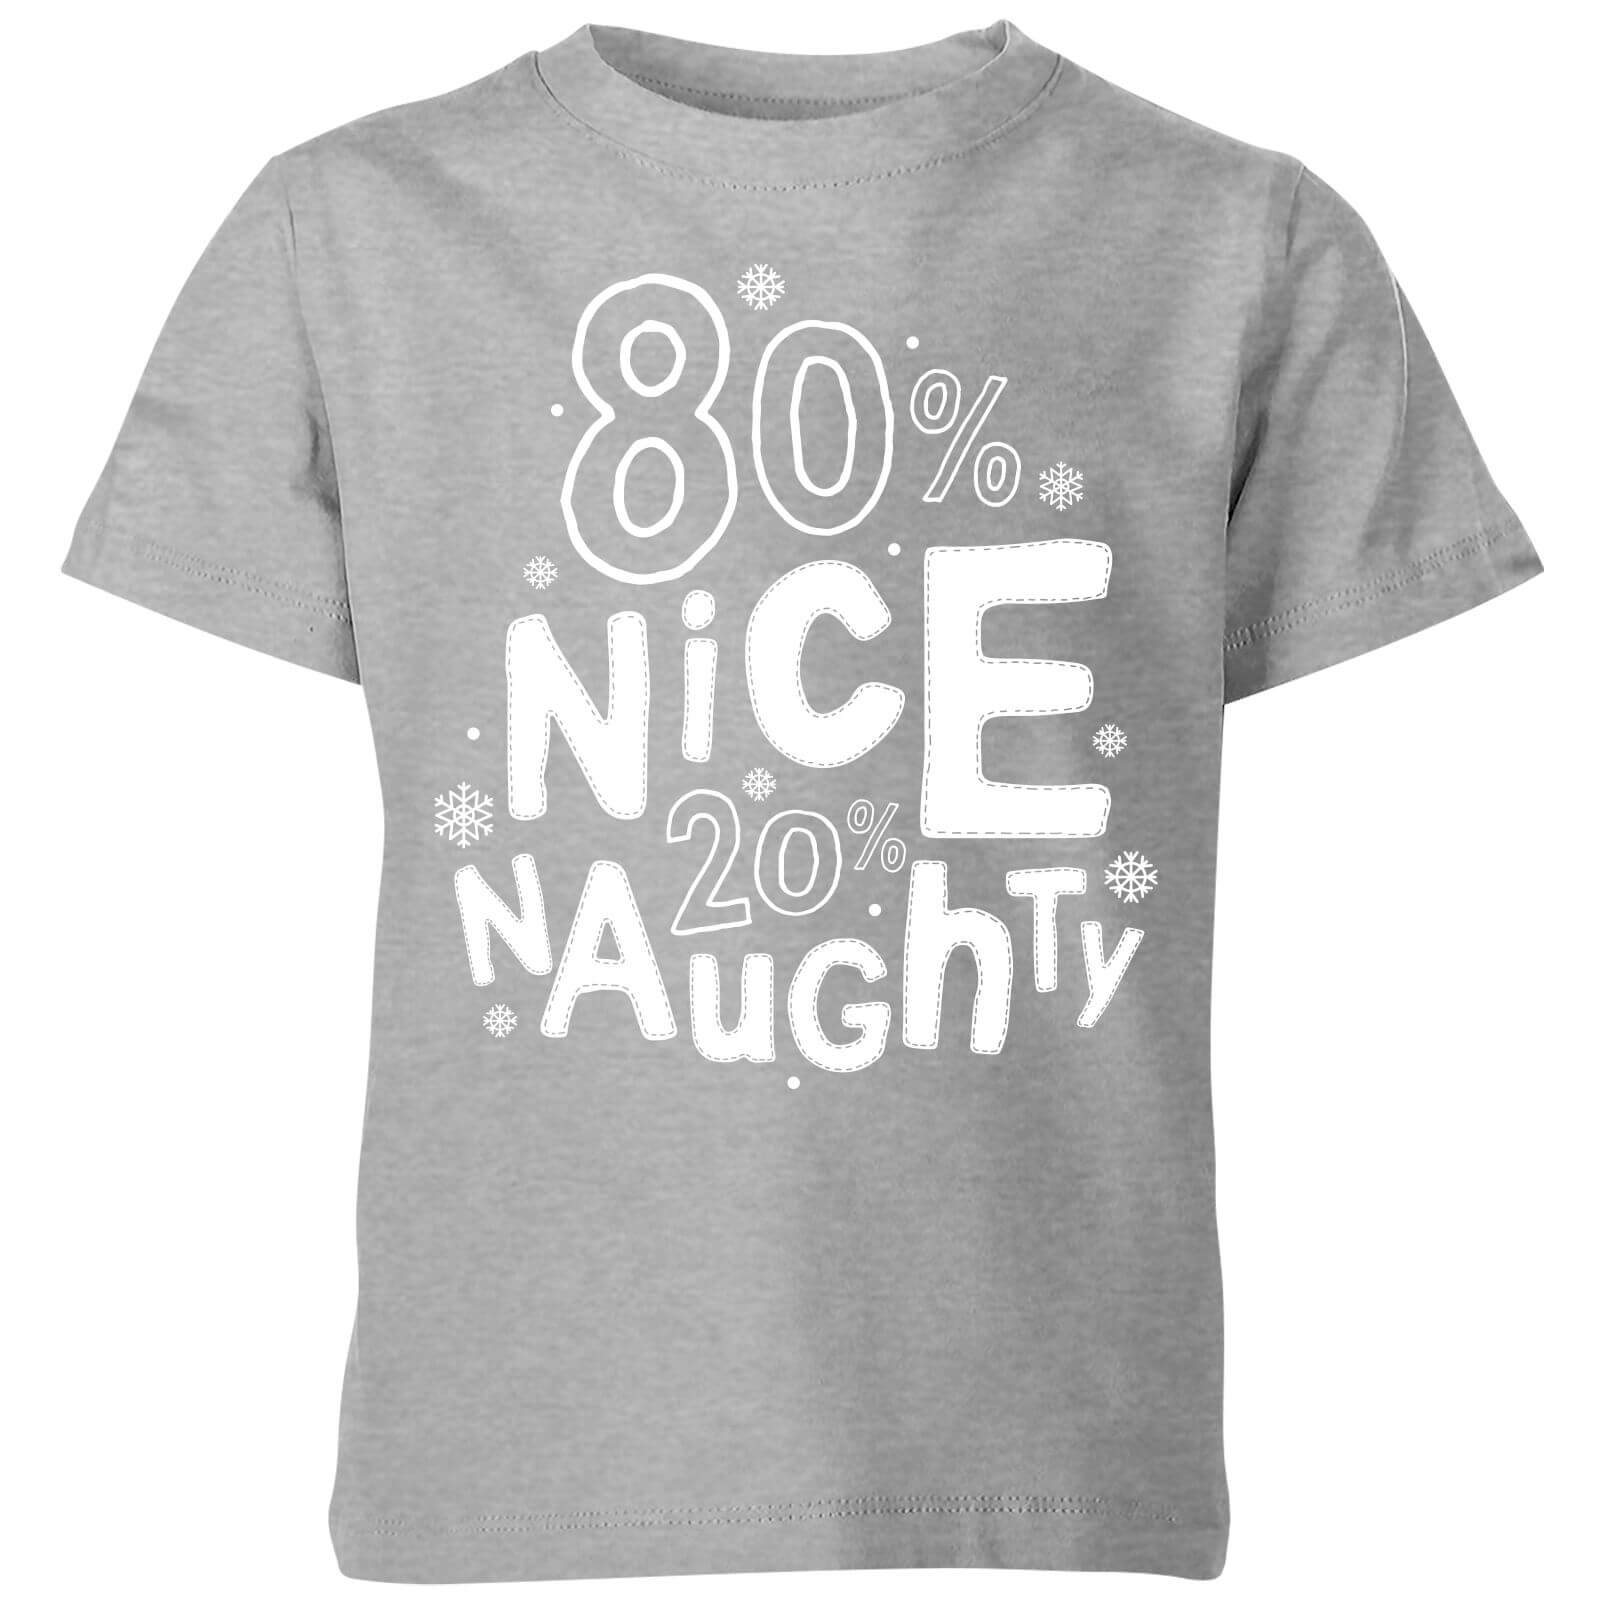 80% Nice 20% Naughty Kids' T-Shirt - Grey - 3-4 Years - Grey